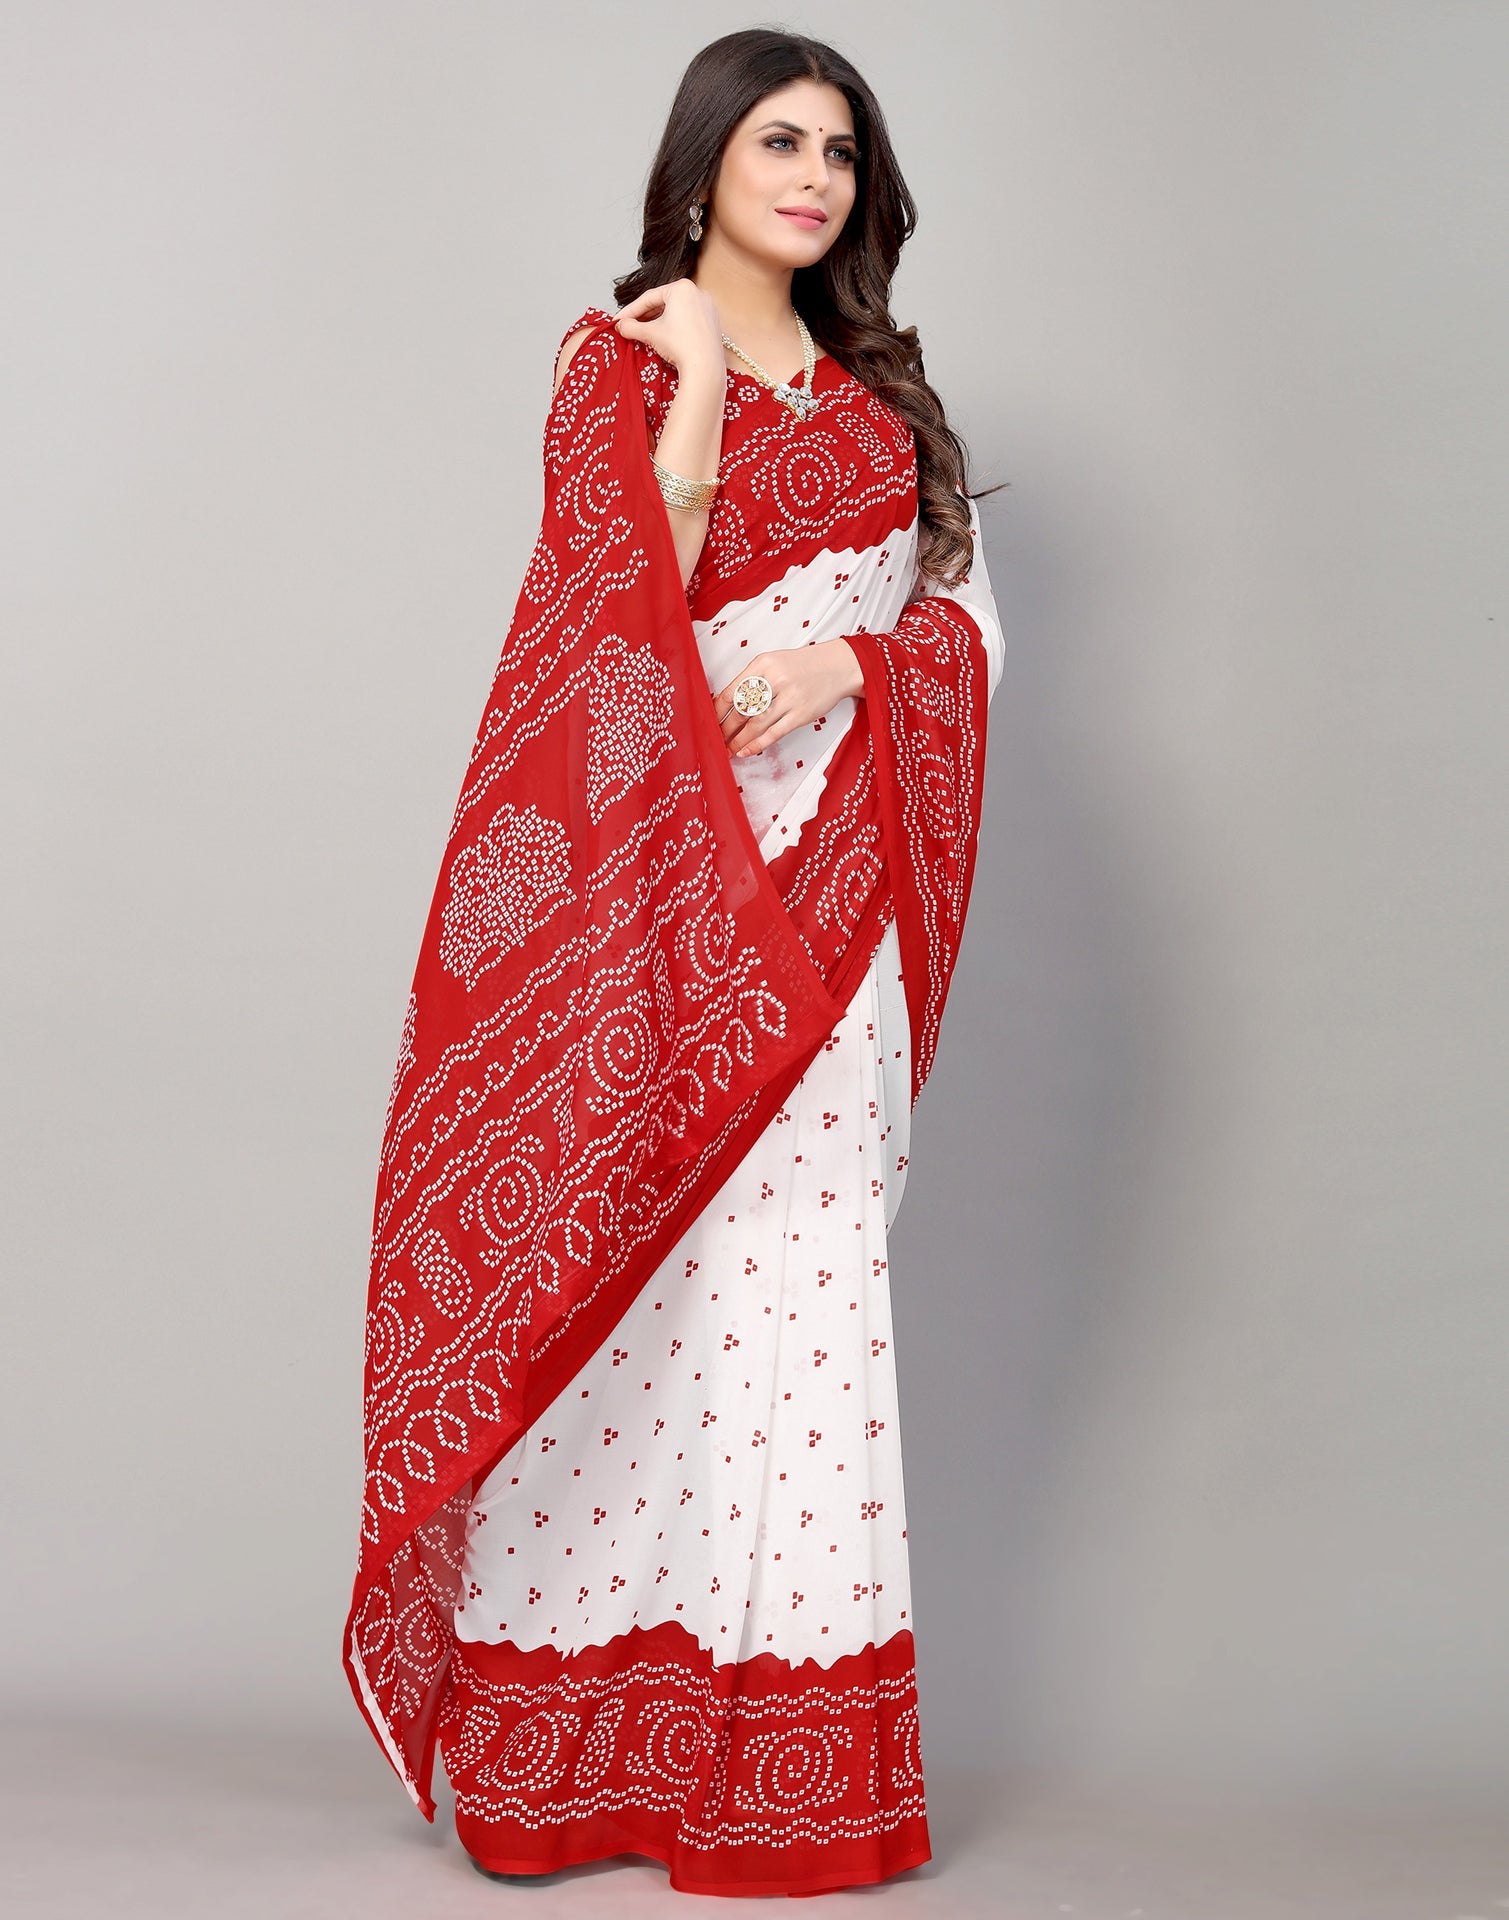 Red And White Bandhani Printed Saree | Sudathi